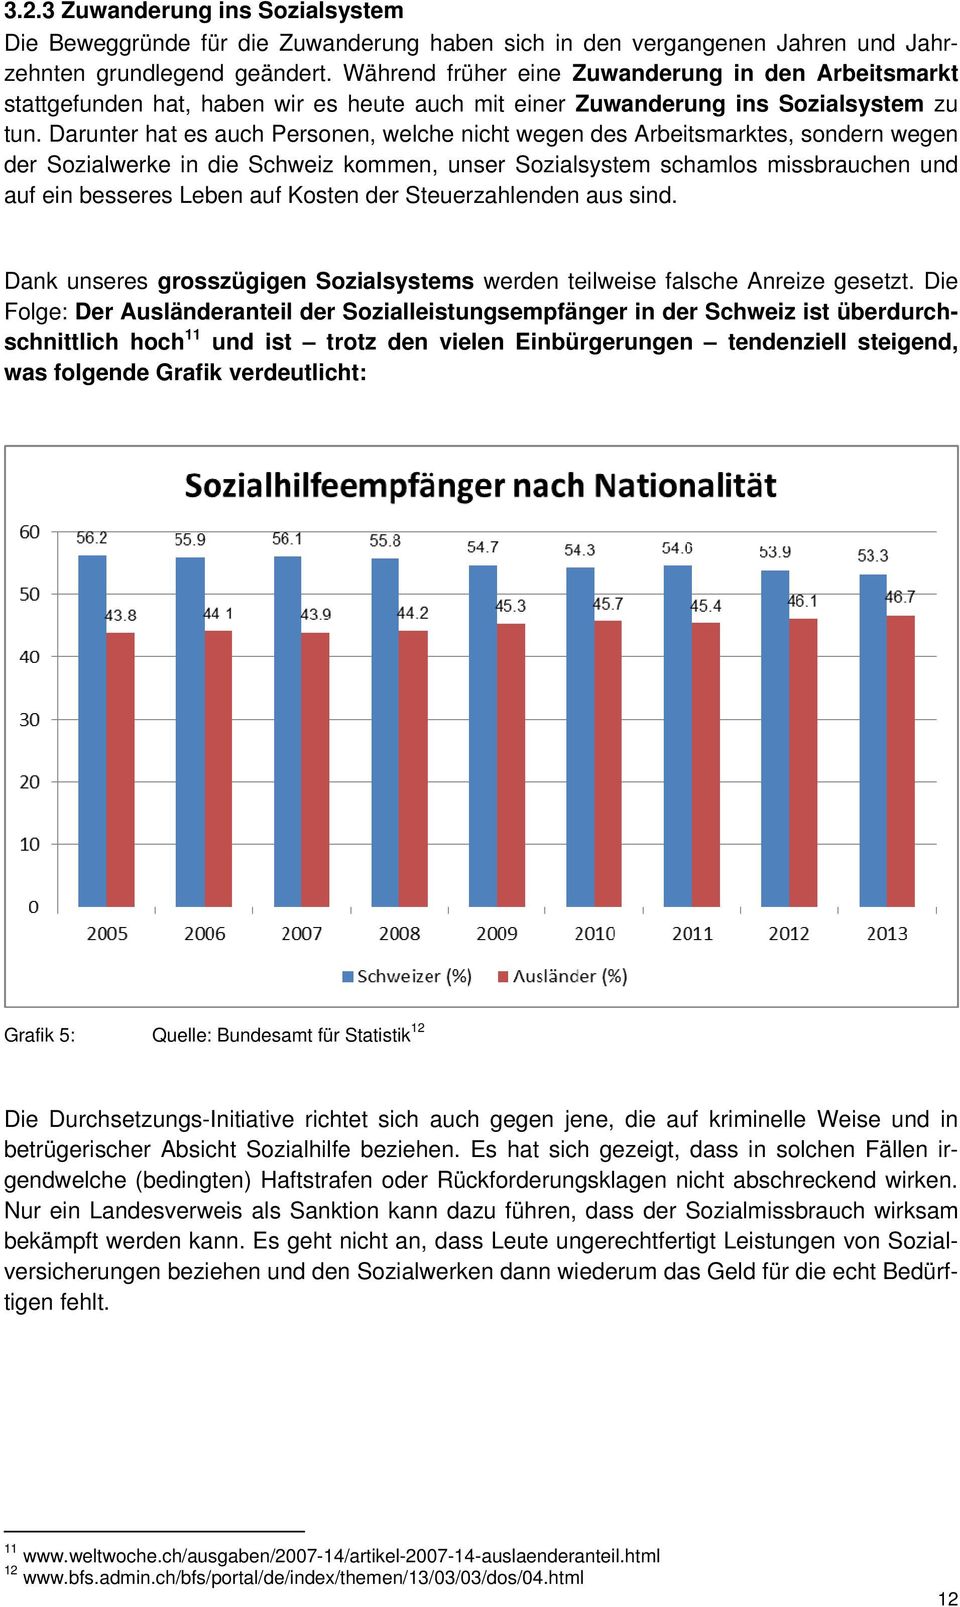 Darunter hat es auch Personen, welche nicht wegen des Arbeitsmarktes, sondern wegen der Sozialwerke in die Schweiz kommen, unser Sozialsystem schamlos missbrauchen und auf ein besseres Leben auf